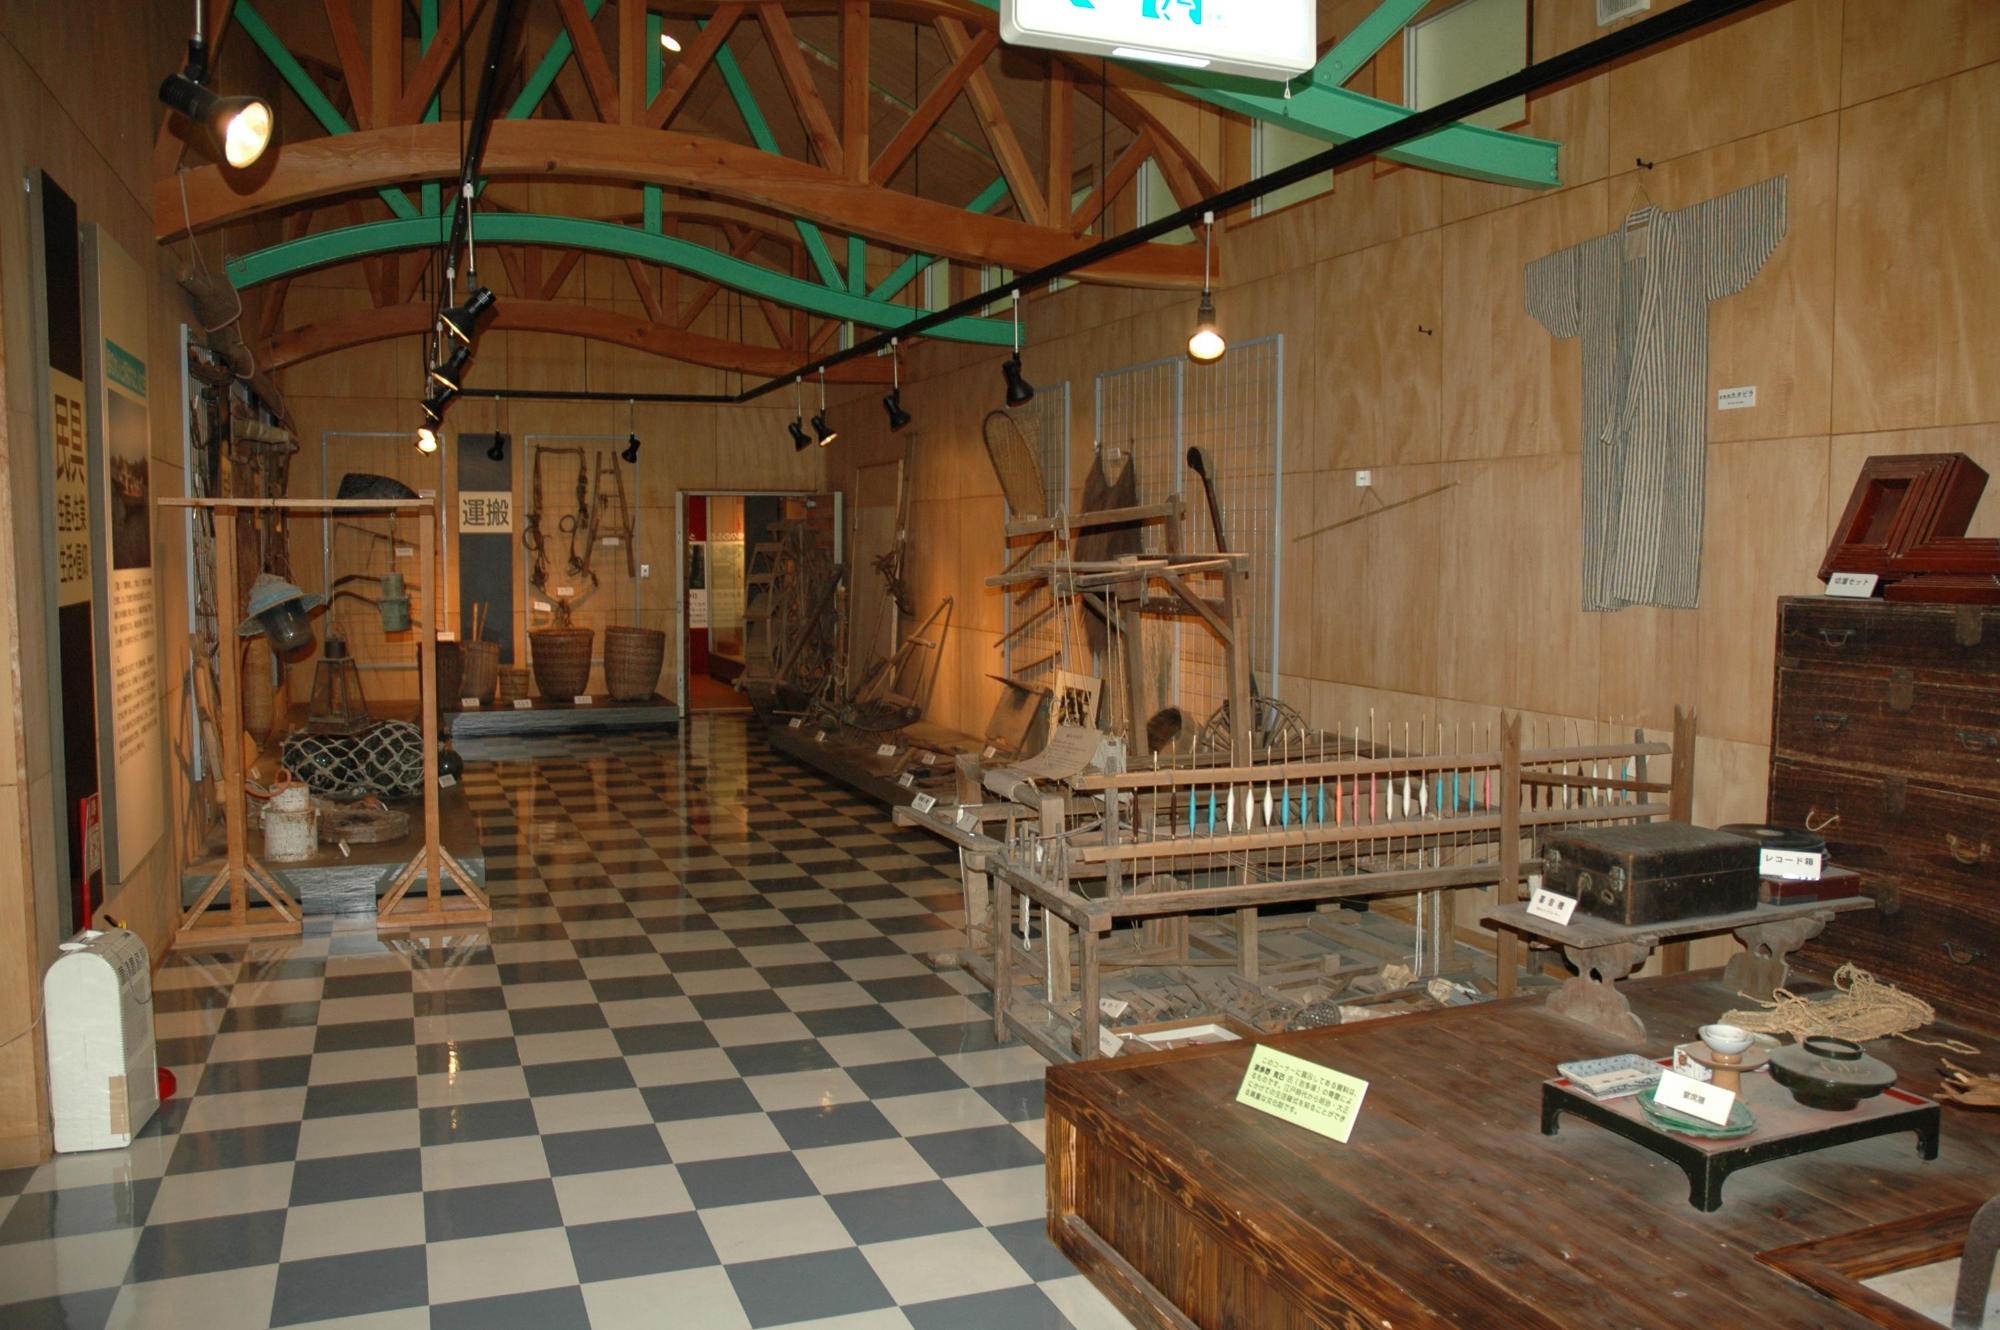 様々な展示品が並ぶ郷土館の内部の写真